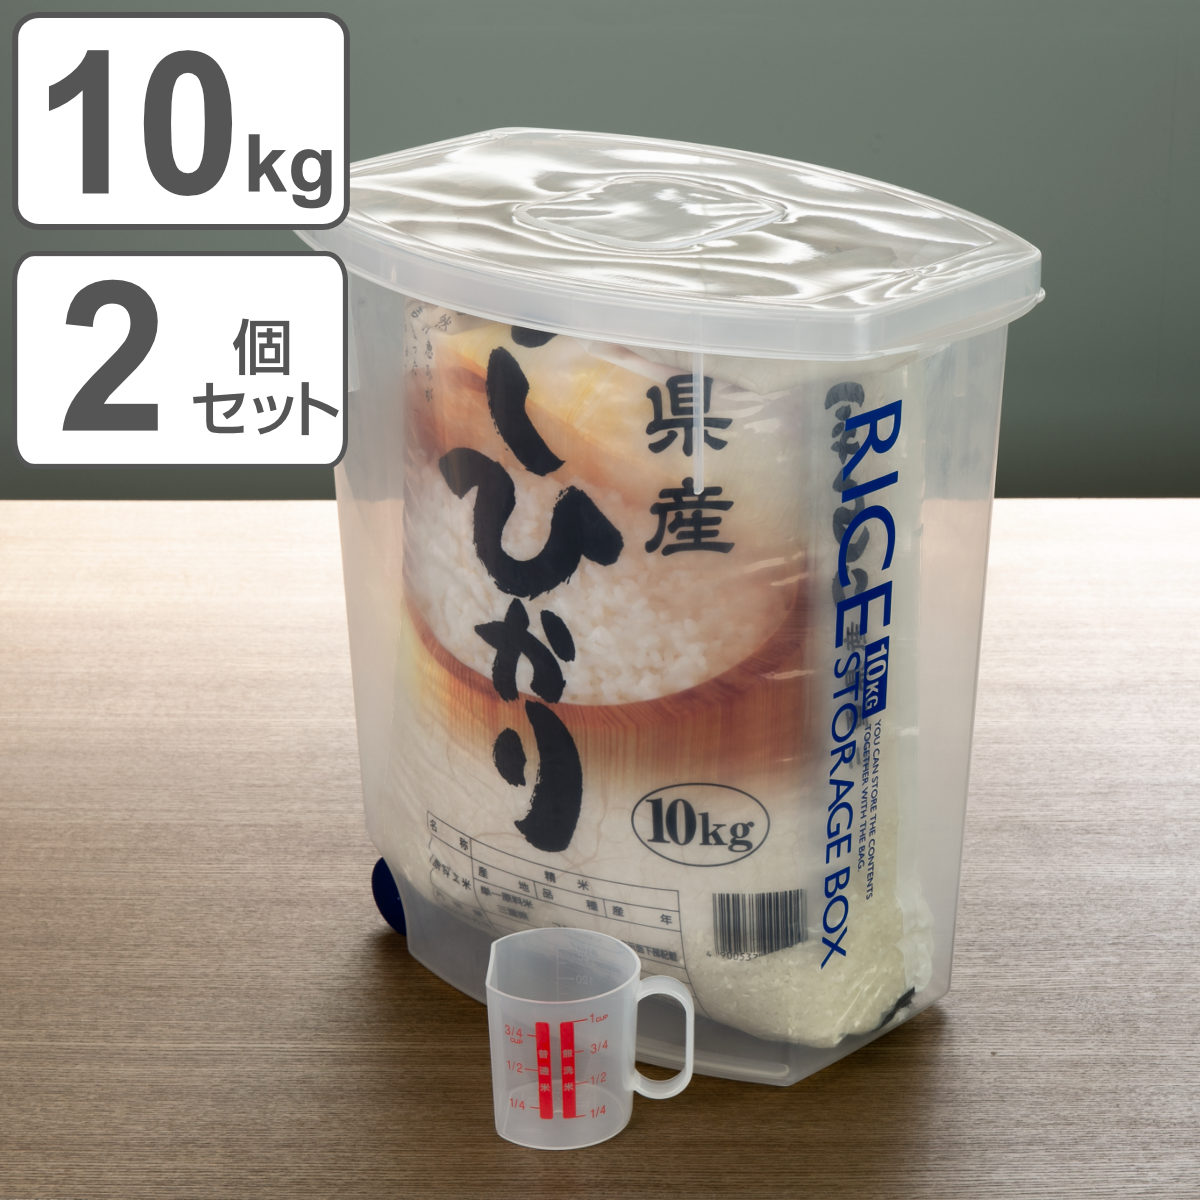 米びつ 袋のまんま防虫米びつ 10kg 計量カップ付 防虫剤